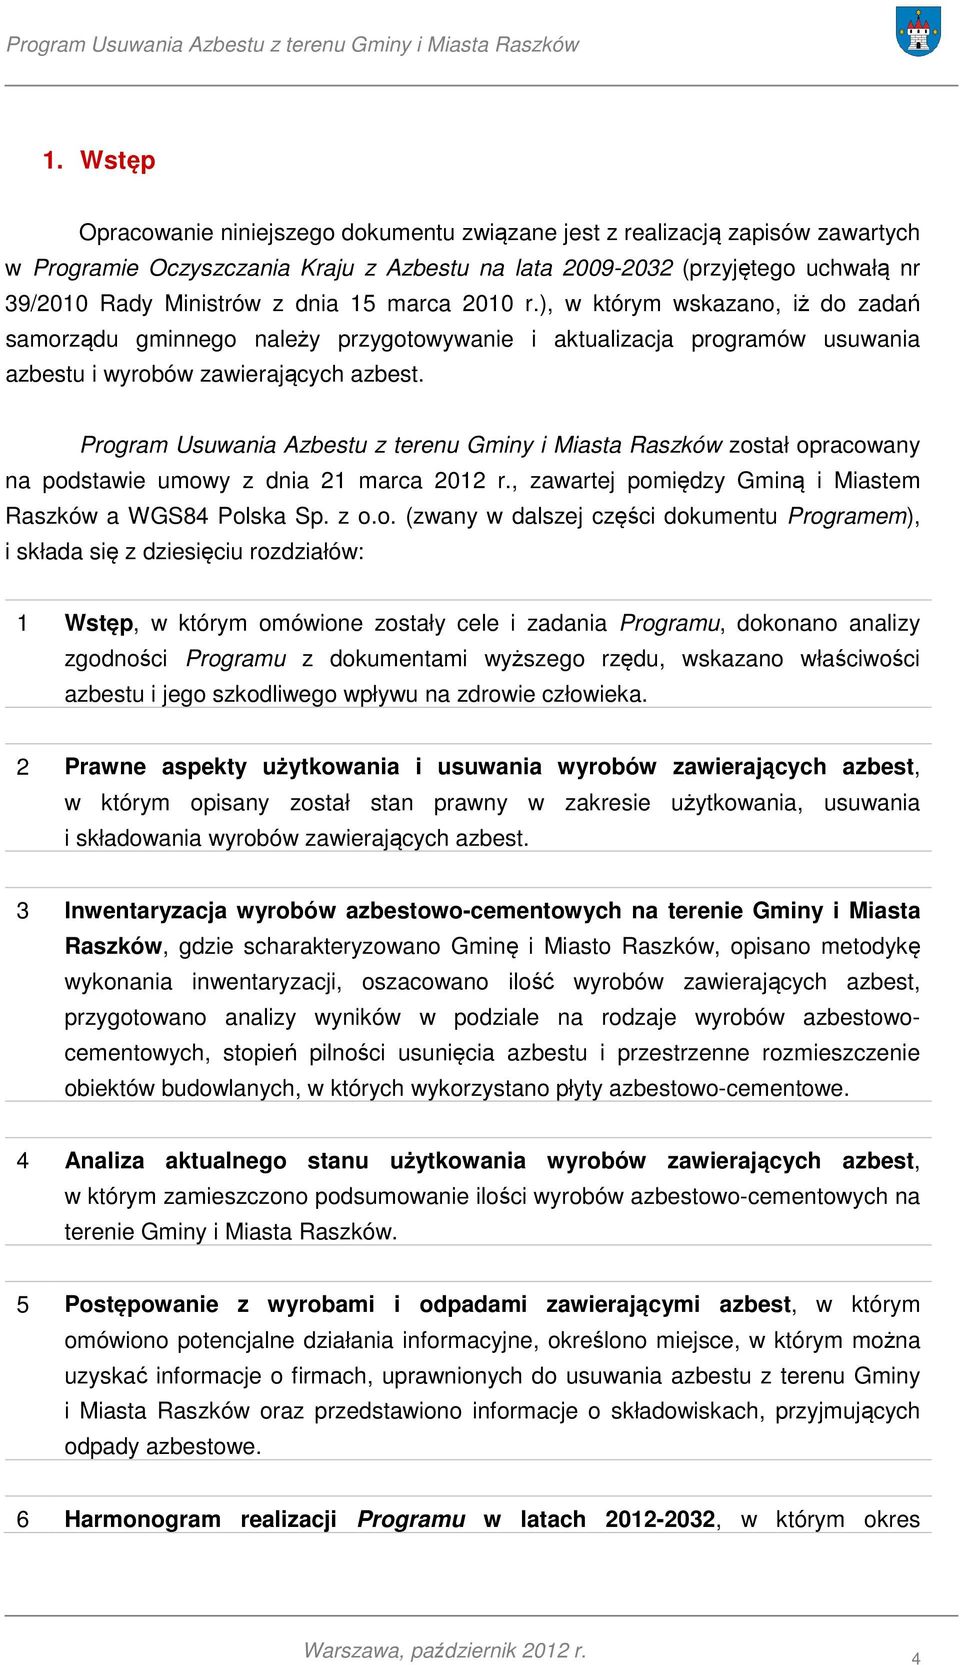 Program Usuwania Azbestu z terenu Gminy i Miasta Raszków został opracowany na podstawie umowy z dnia 21 marca 2012 r., zawartej pomiędzy Gminą i Miastem Raszków a WGS84 Polska Sp. z o.o. (zwany w